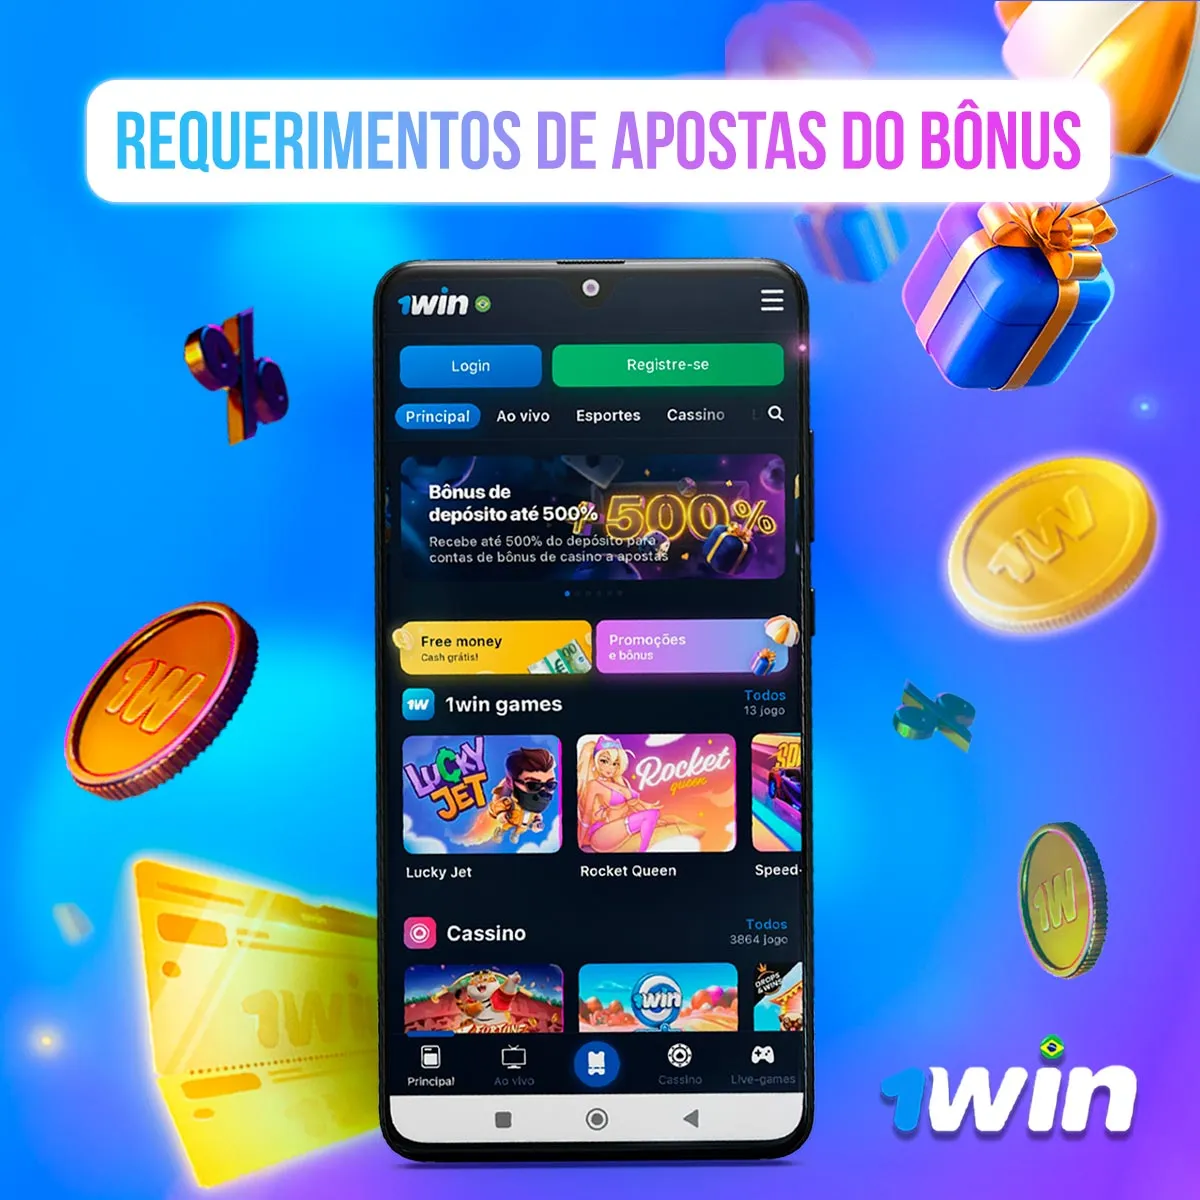 Requerimentos de apostas do bônus no aplicativo móvel 1win no mercado brasileiro